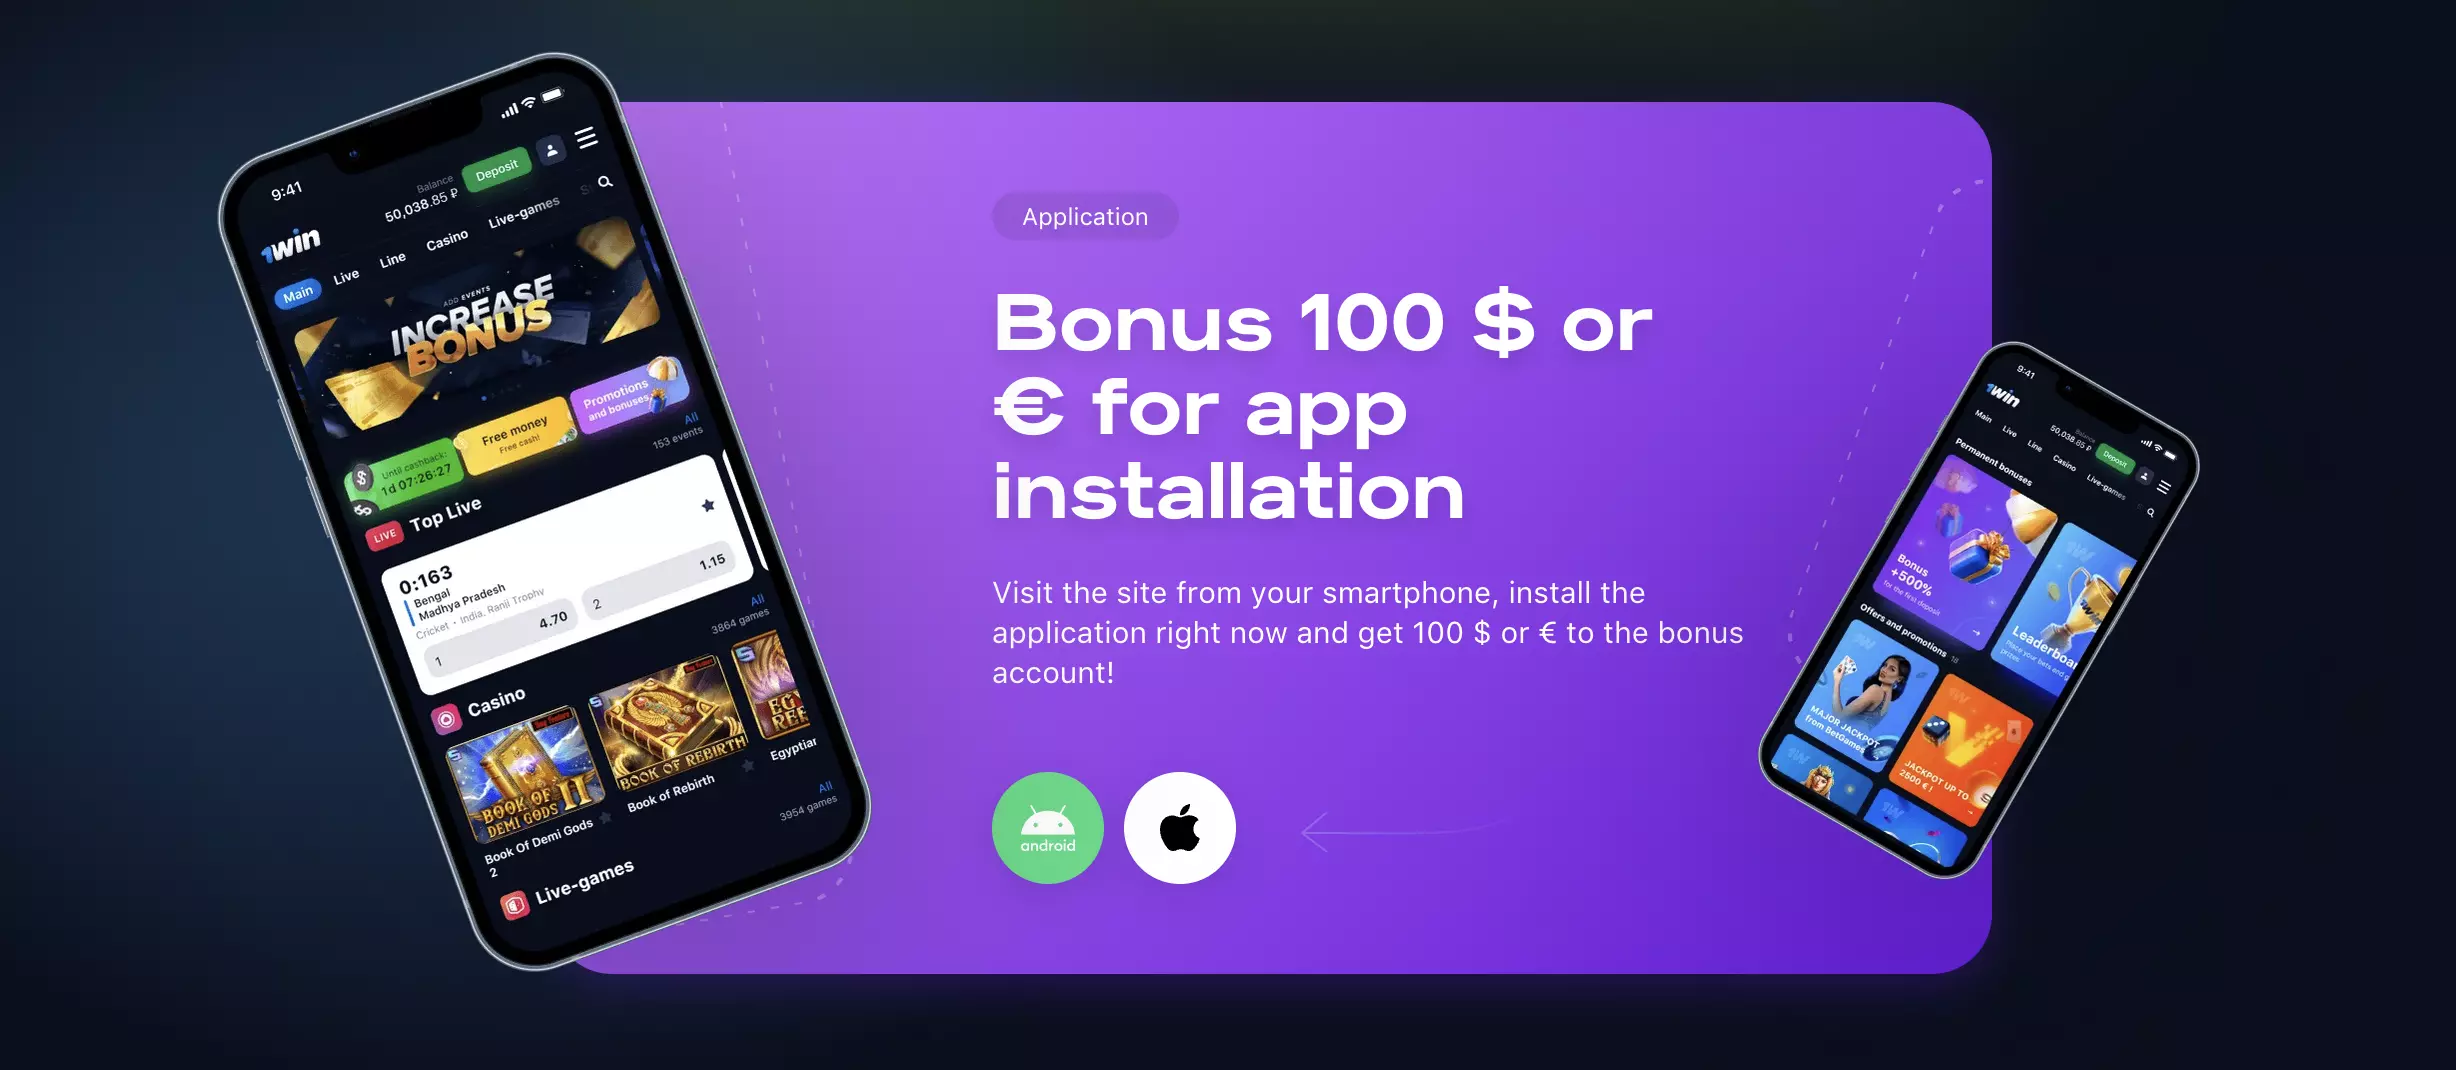 1win app installation bonus